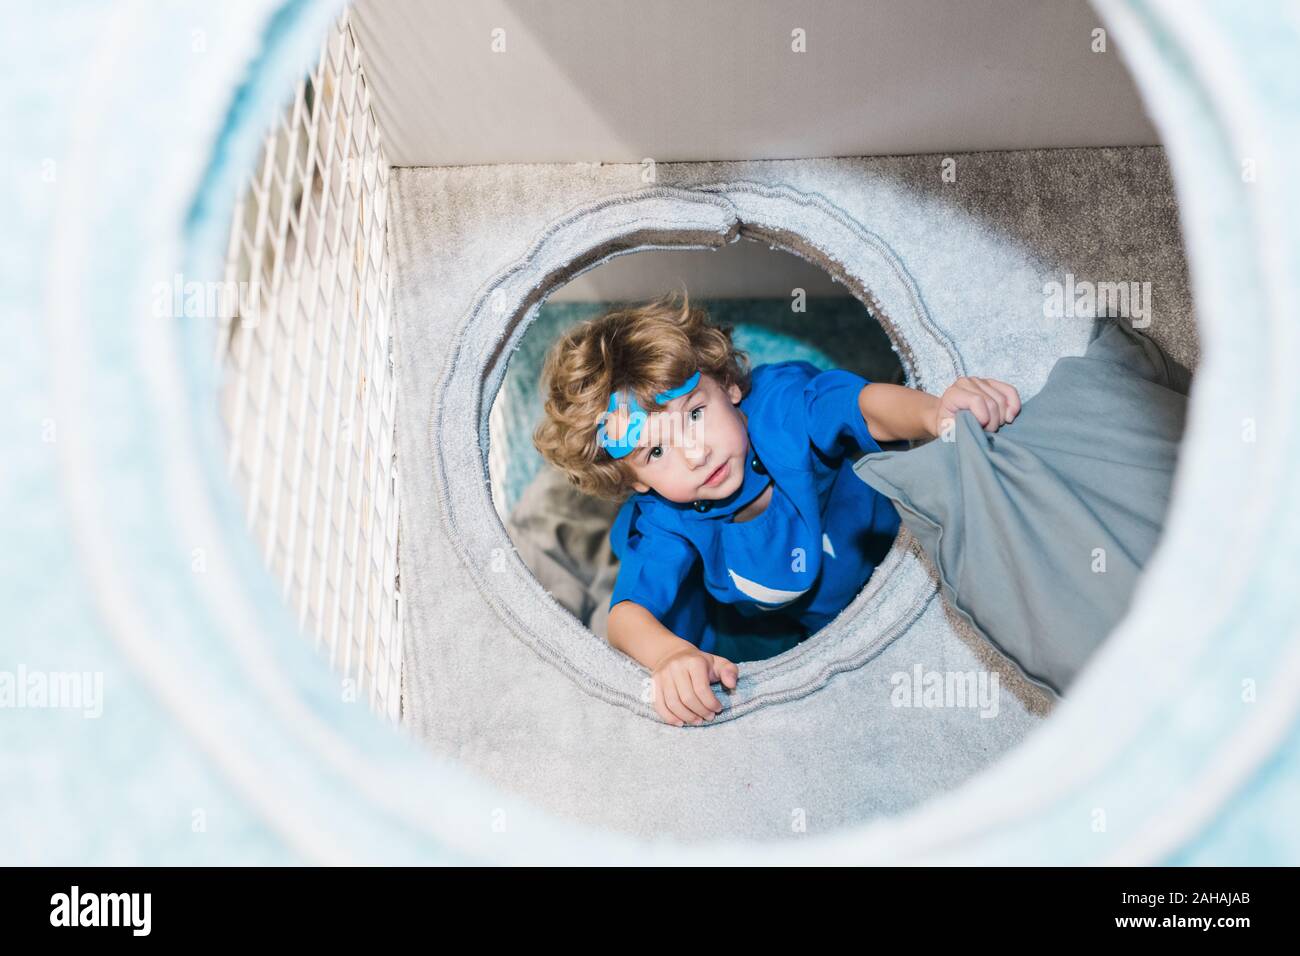 Mignon petit garçon blond en costume de superman bleu jouant dans des chambre Banque D'Images